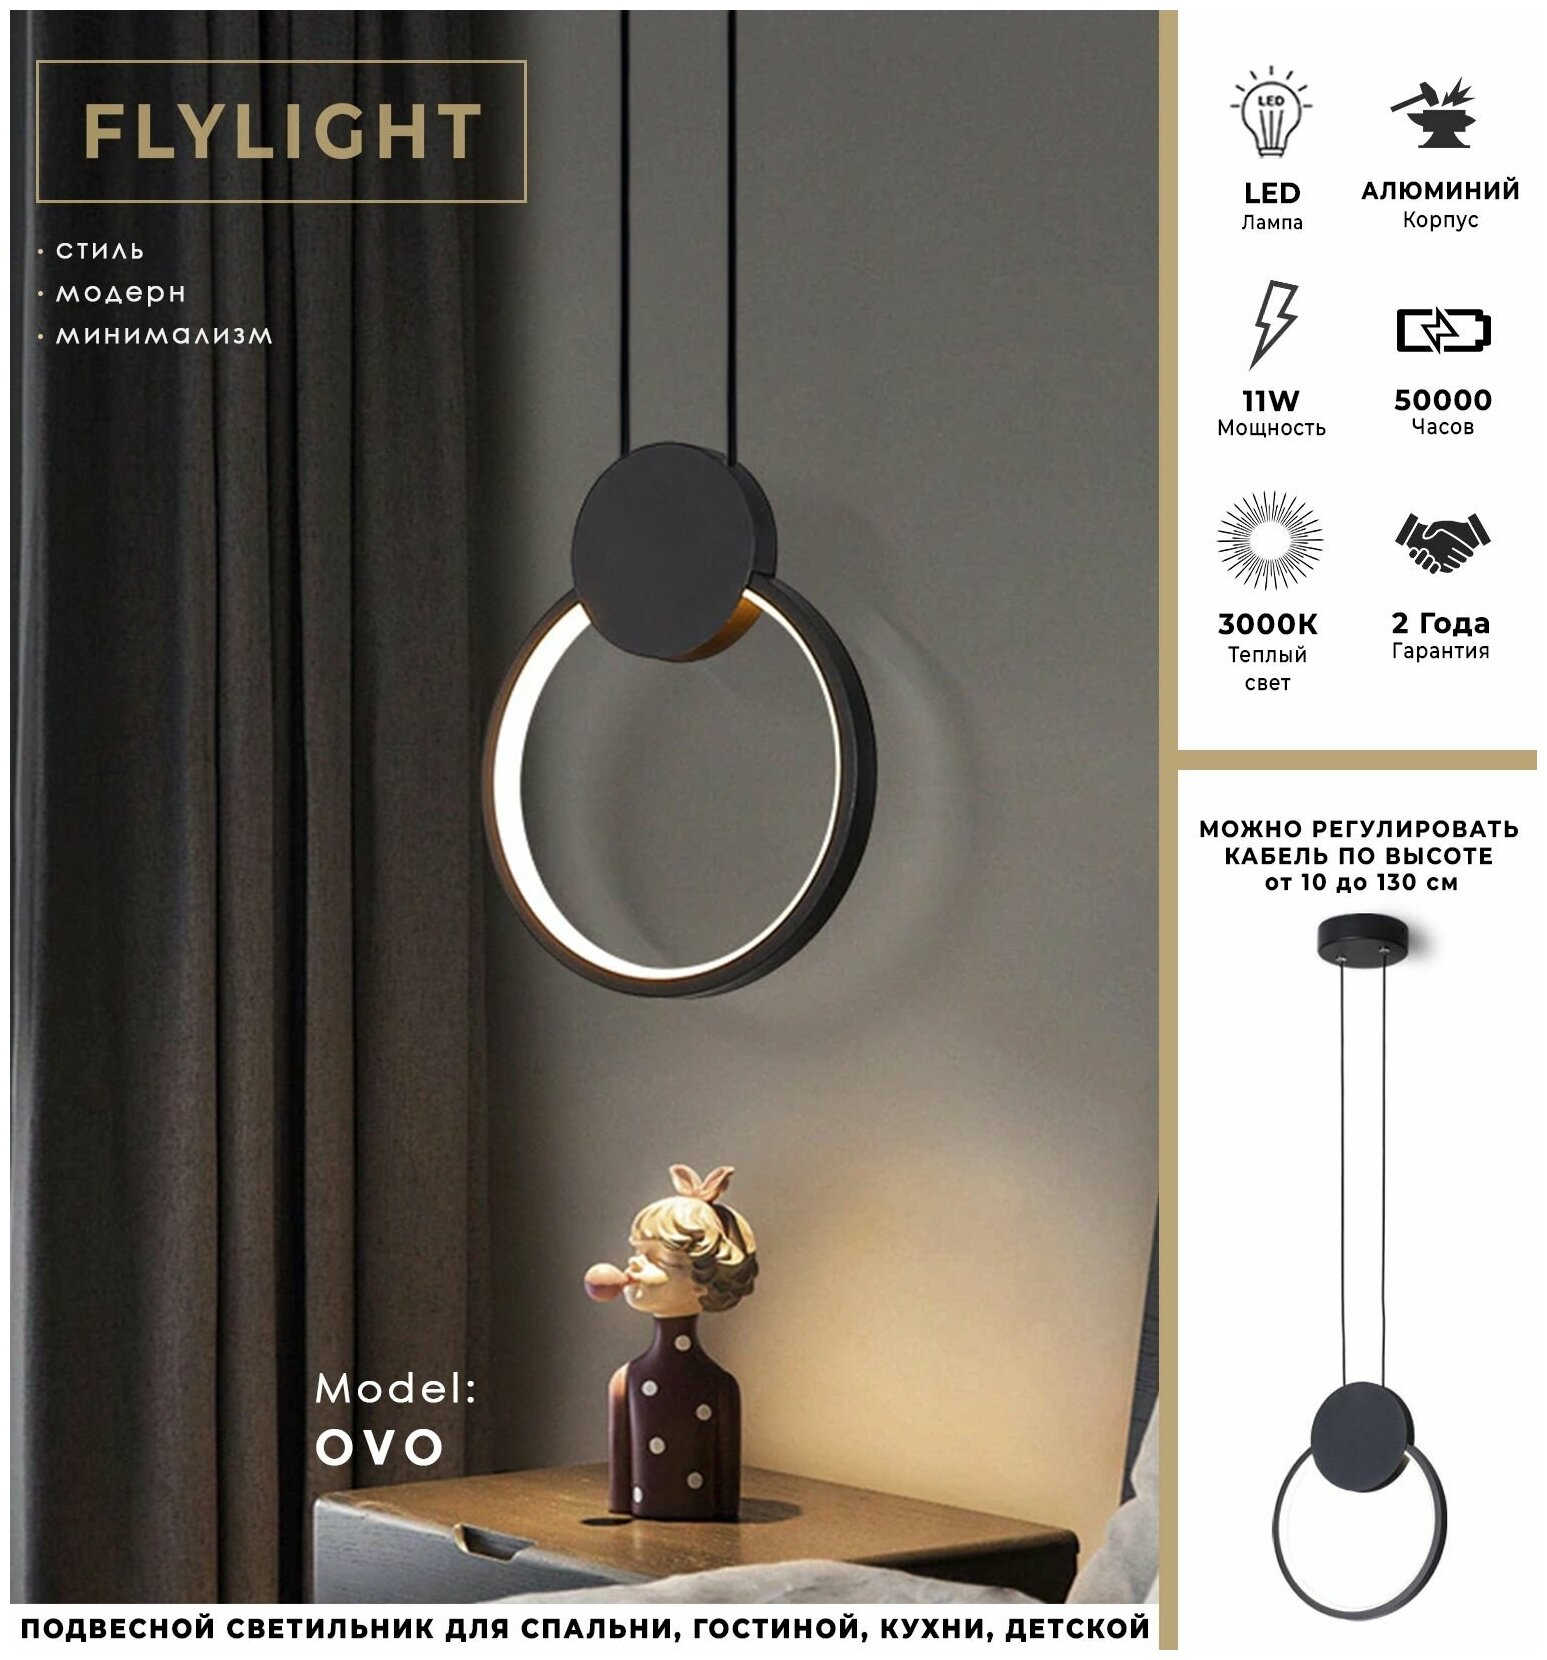 Светильник потолочный Flylight светодиодный OVO Comfort - LED 11W с регулировкой по высоте /Лампа - 3000K (теплый свет), плафон черный белый